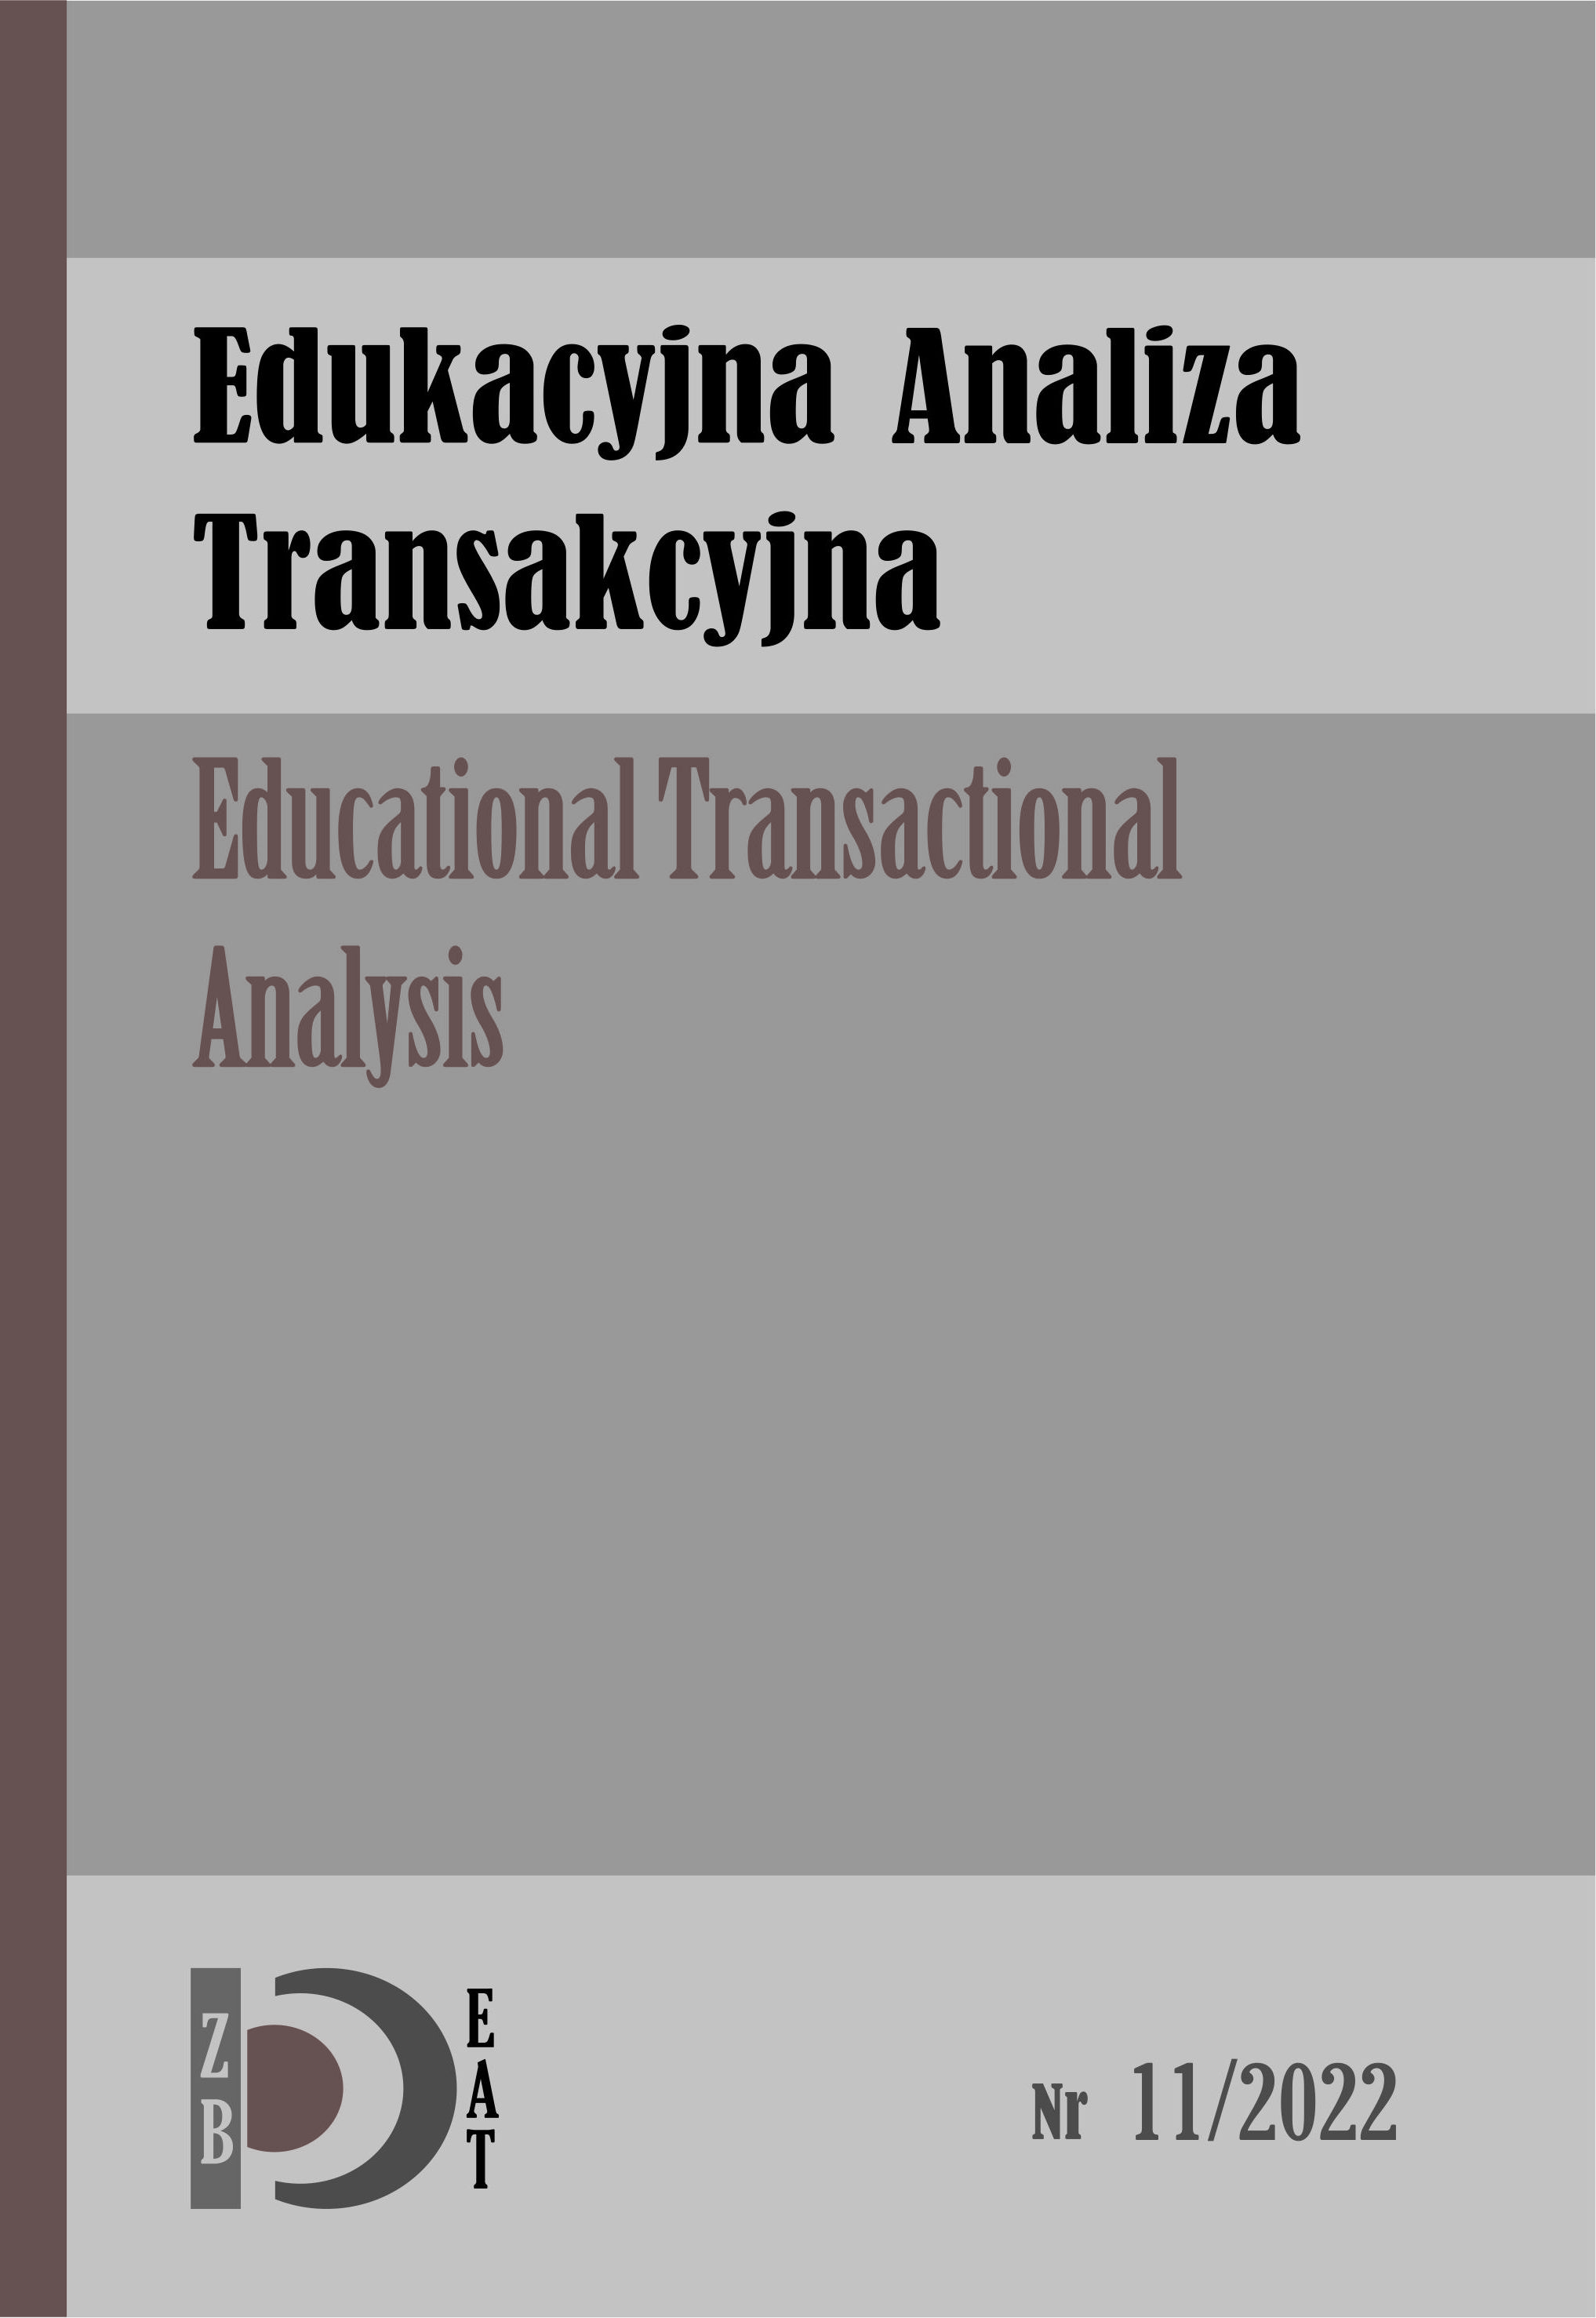 Okładka czasopisma edukacyjna analiza transakcyjna